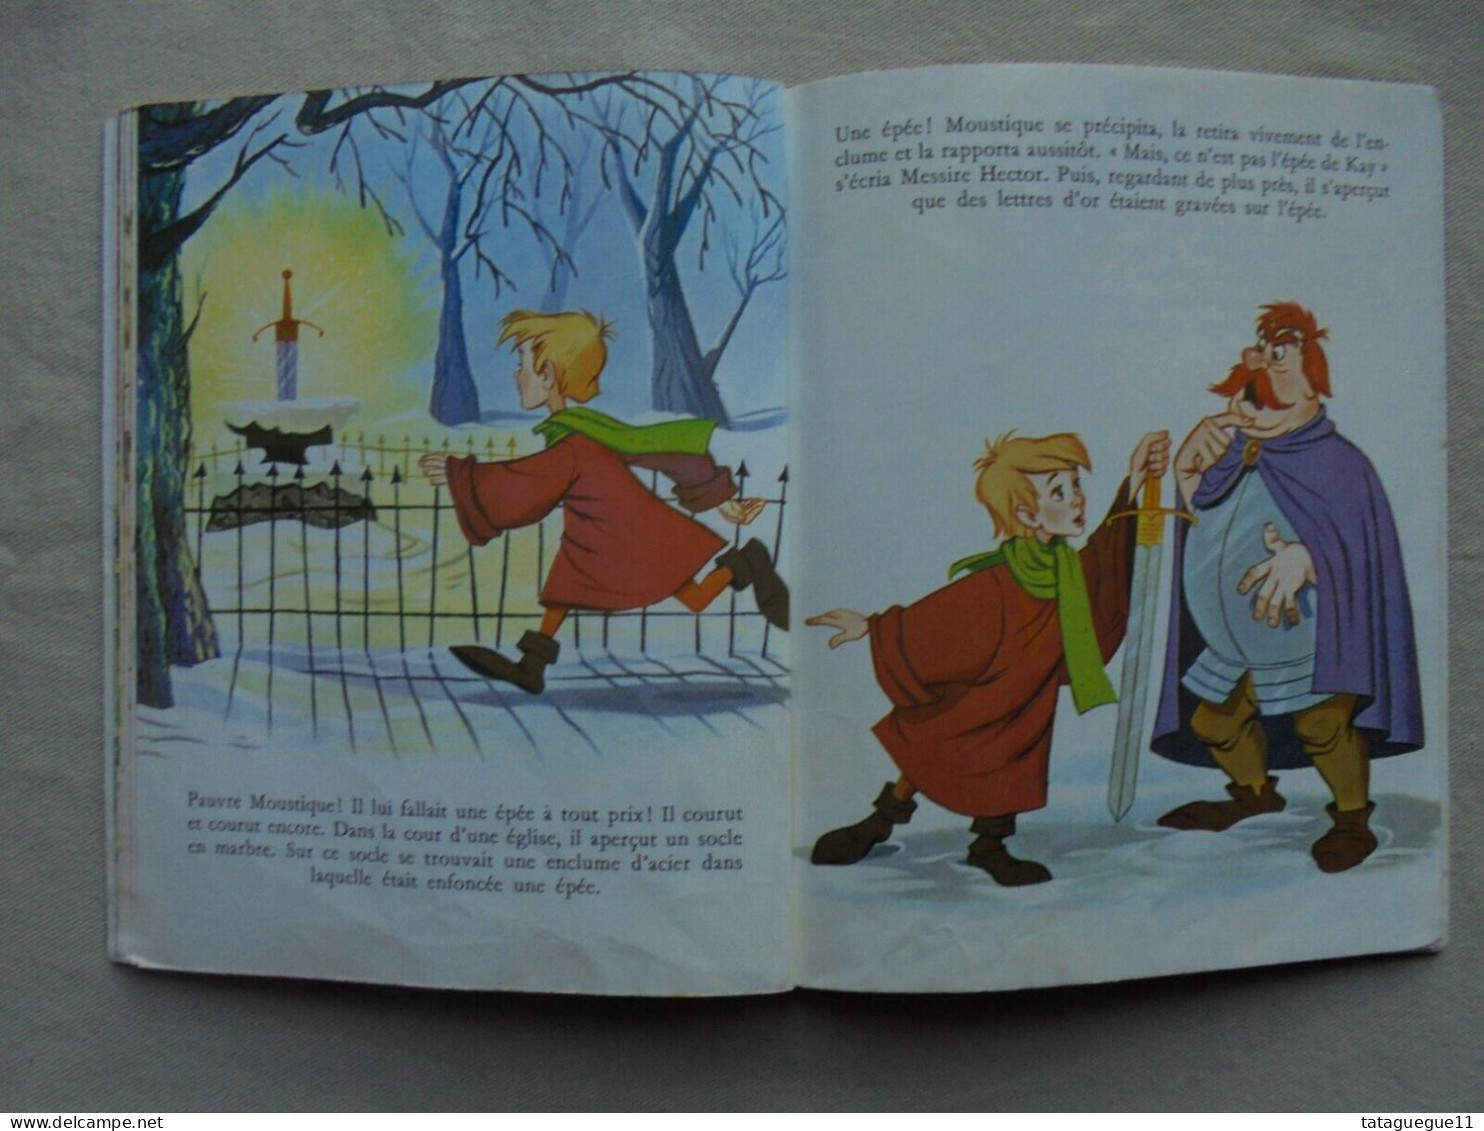 Ancien - Livre pour enfant Merlin l'Enchanteur Les Albums Roses 1963